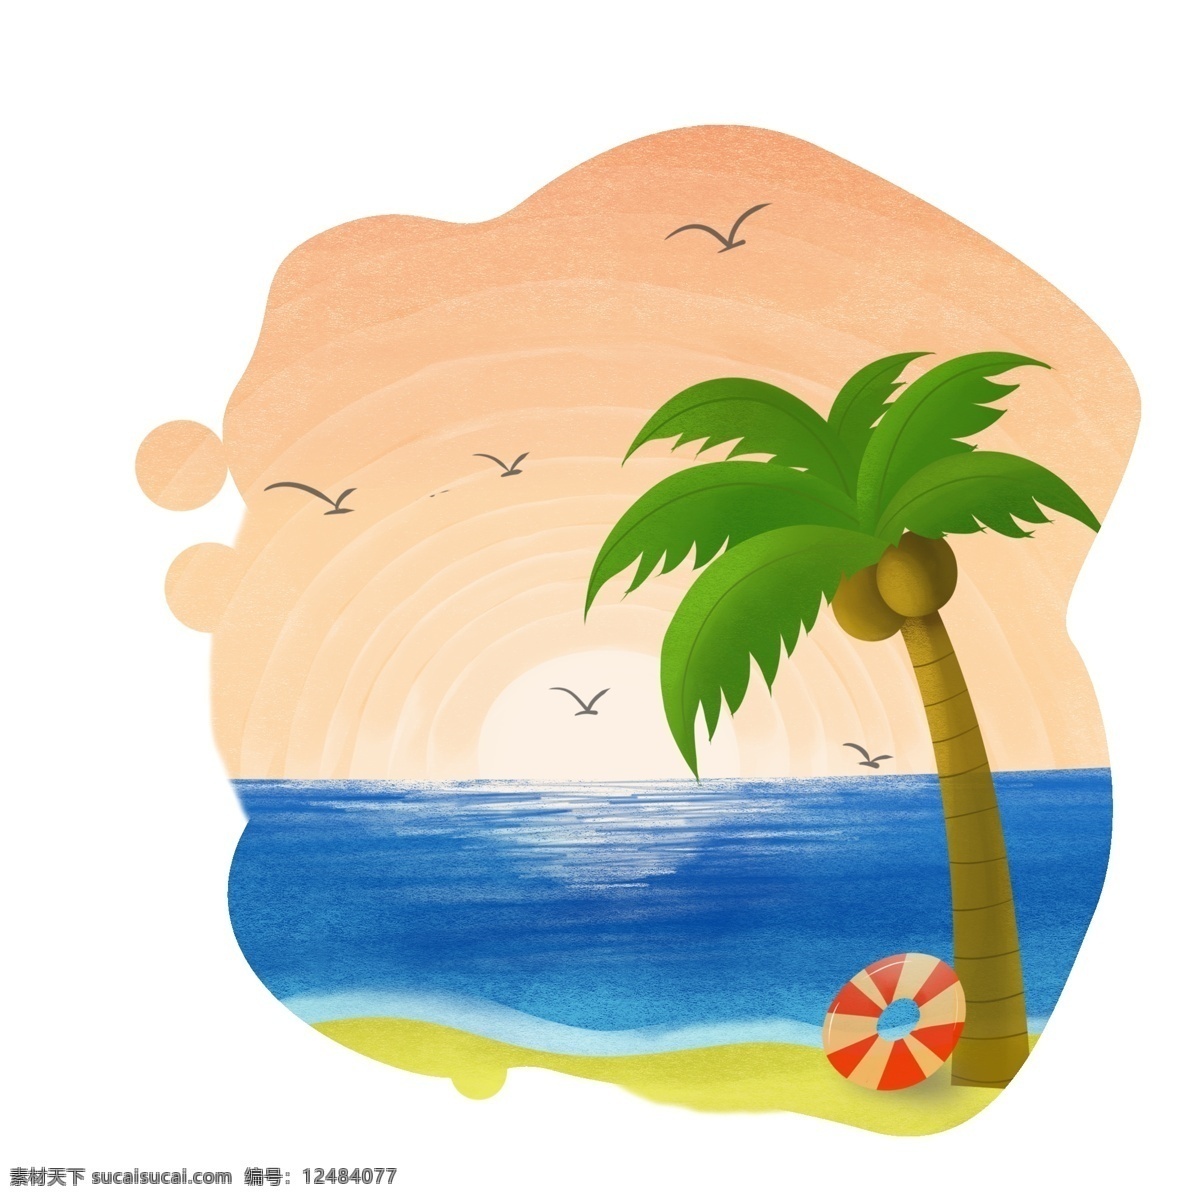 夏至 黄昏 椰树 大海 沙滩 日落 泳 圈 海鸥 椰子 泳圈